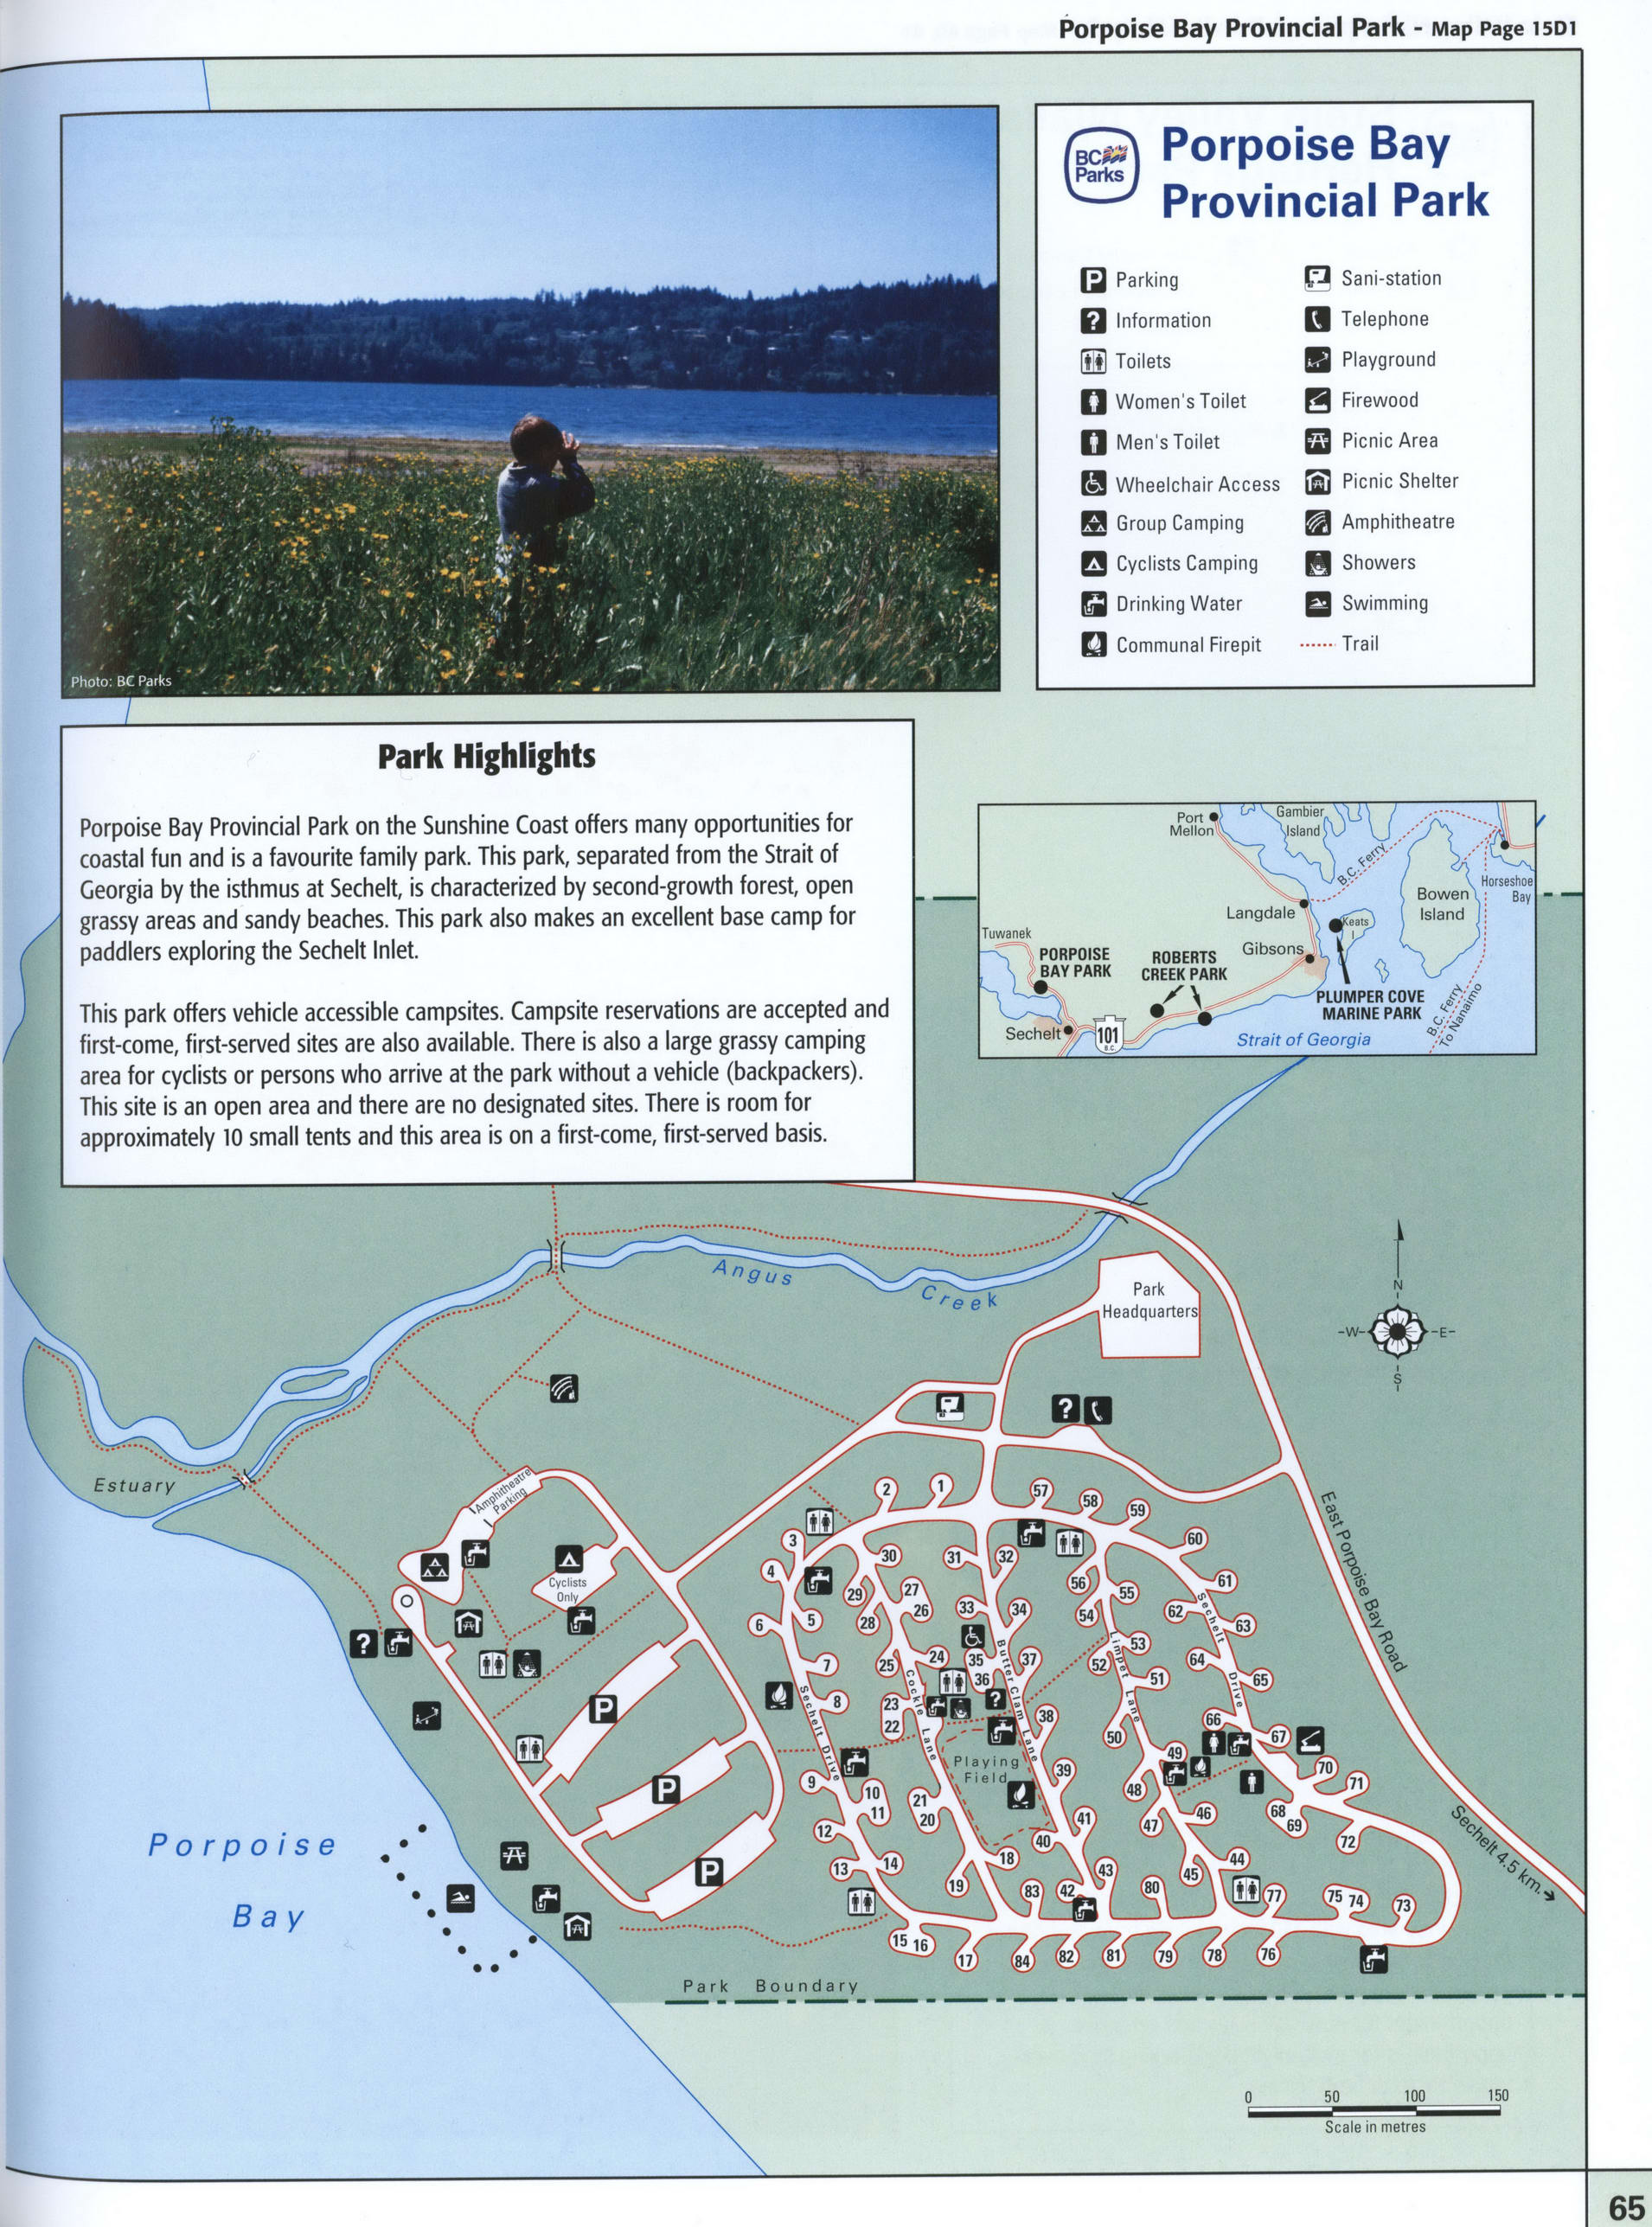 Porpoise Bay Provincial Park 